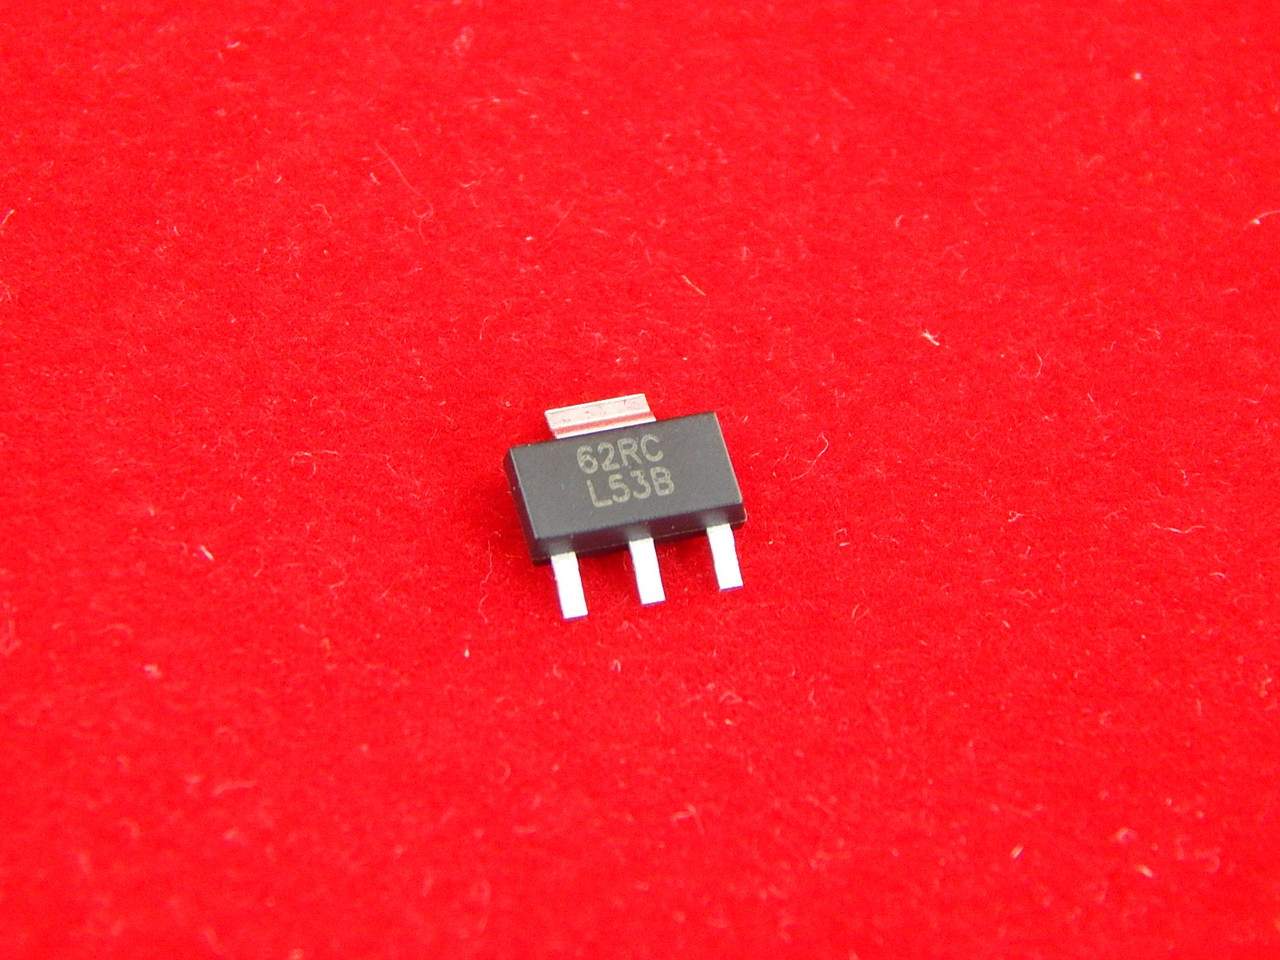 LM2940IMPX-5.0, Стабилизатор 1А, 5В, (L53B)